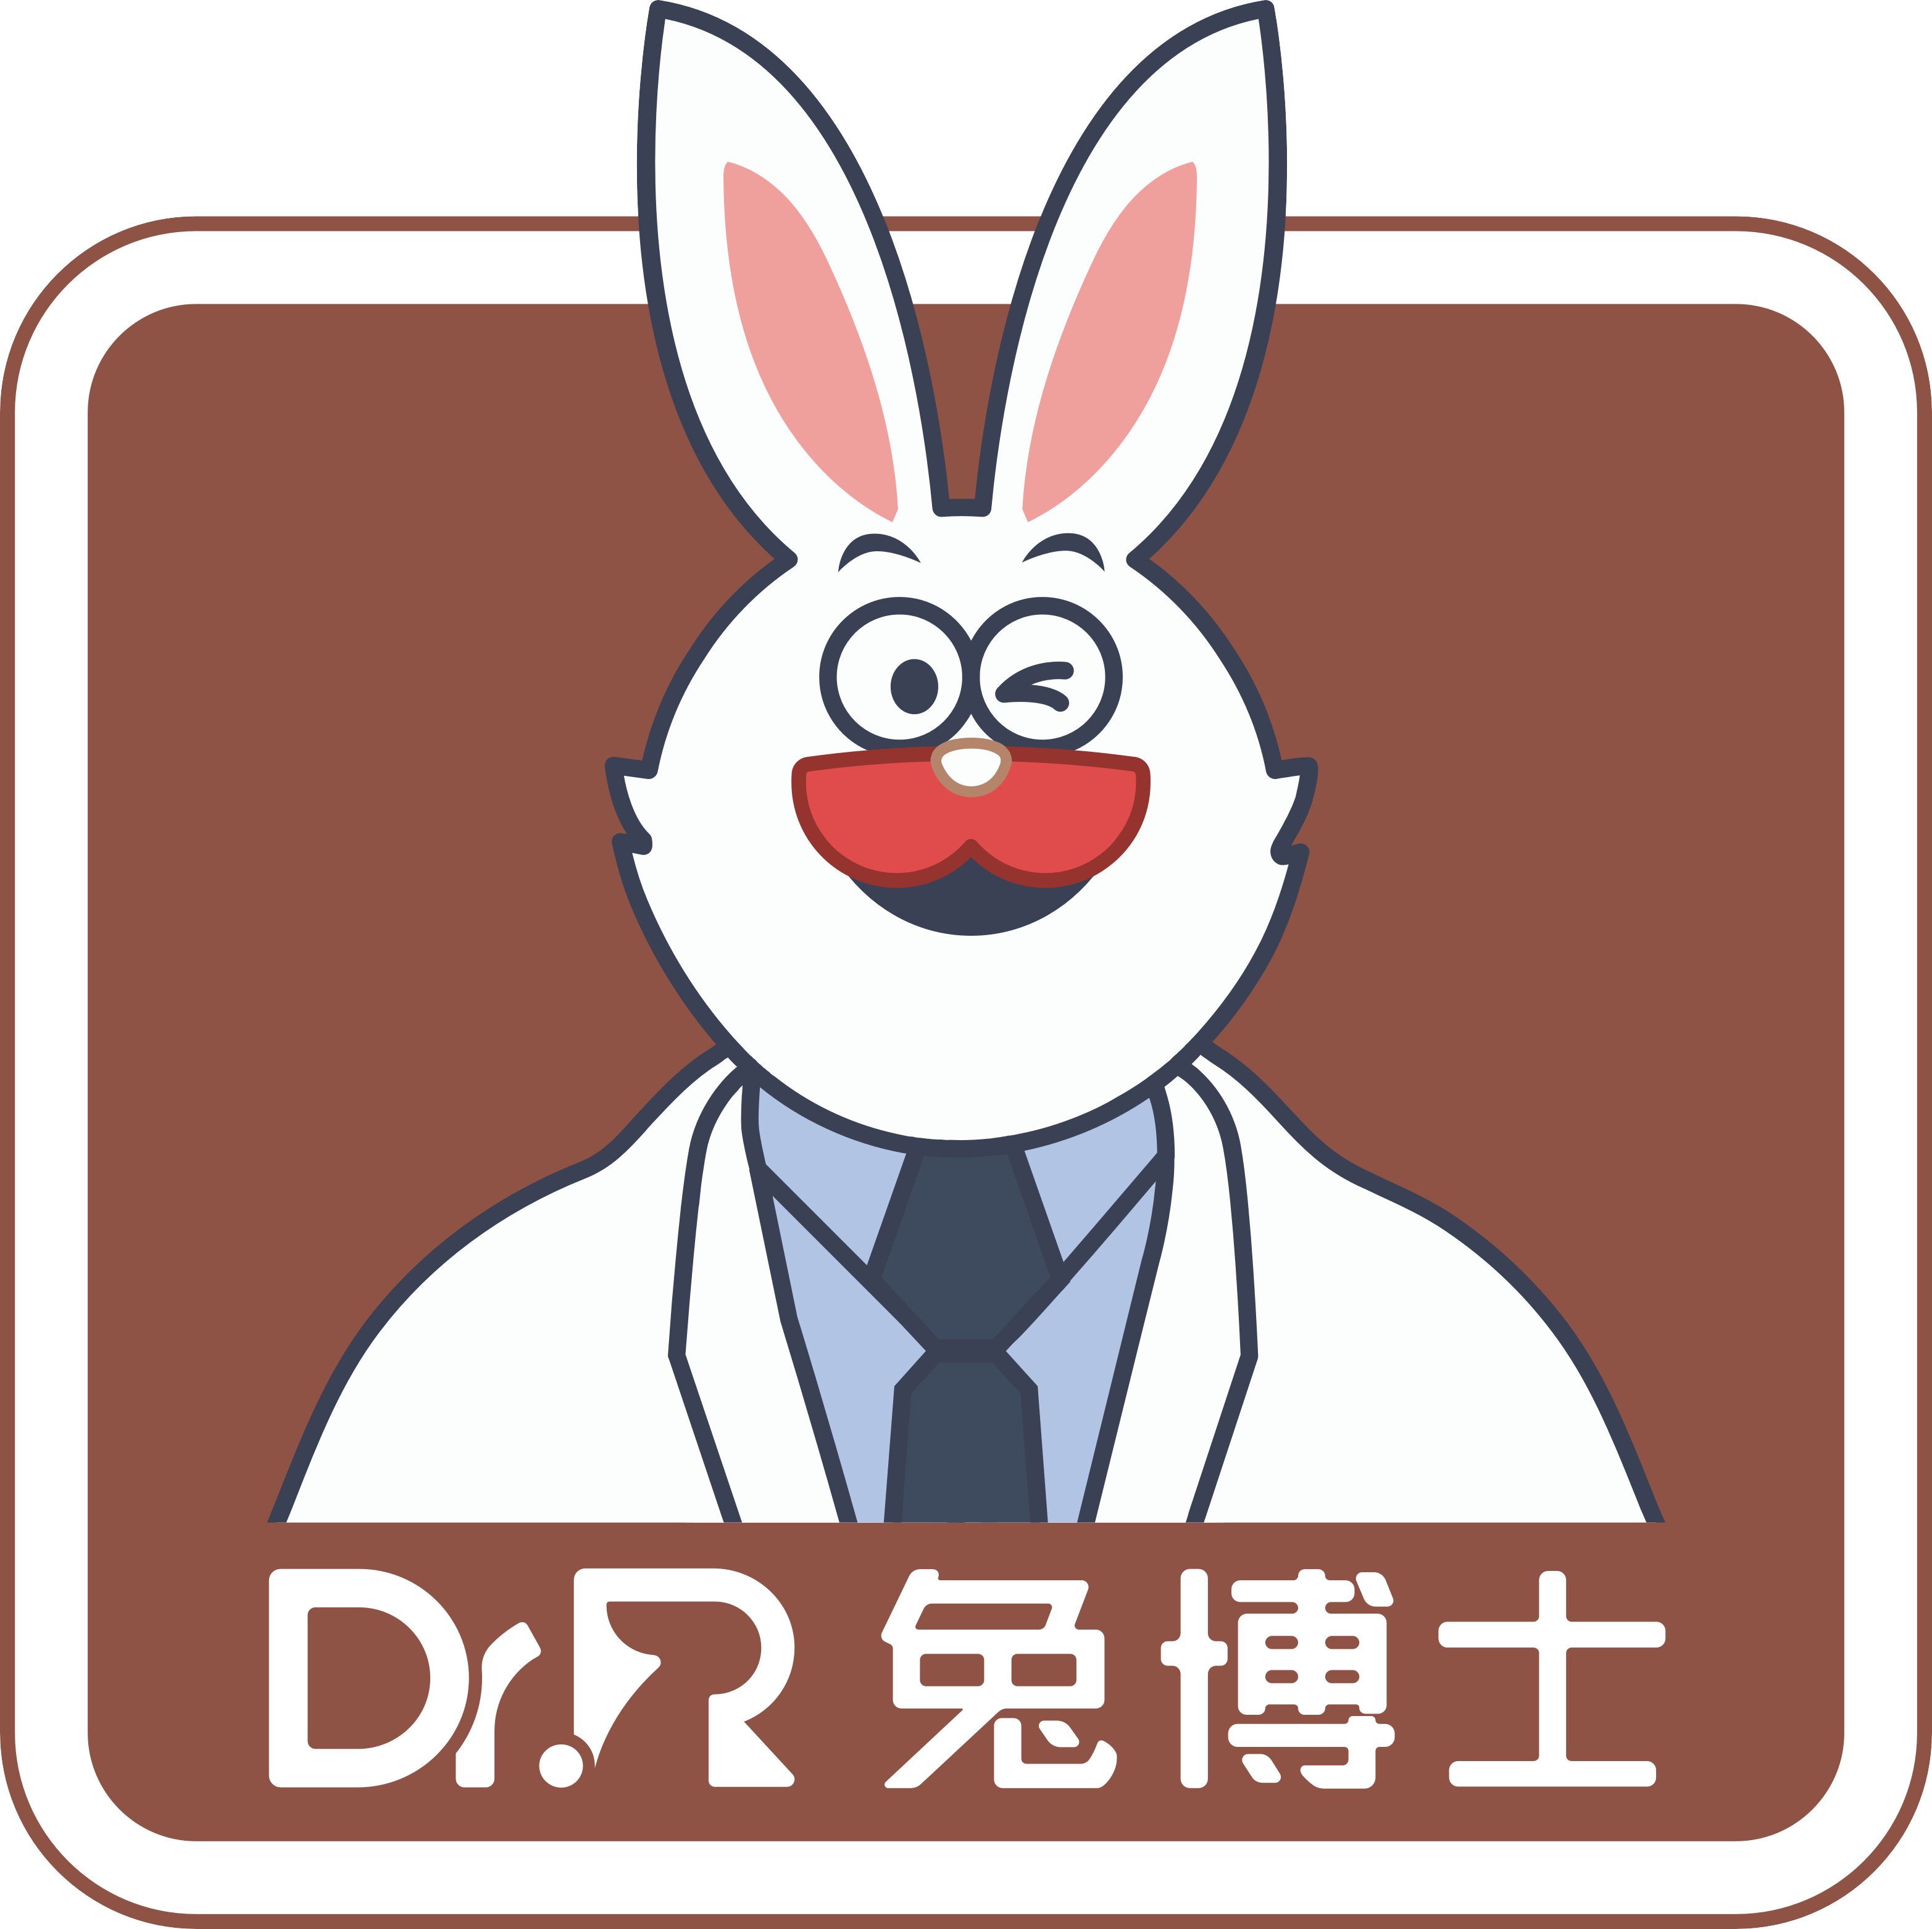 小白兔口腔医疗科技集团安康兔博士口腔医院